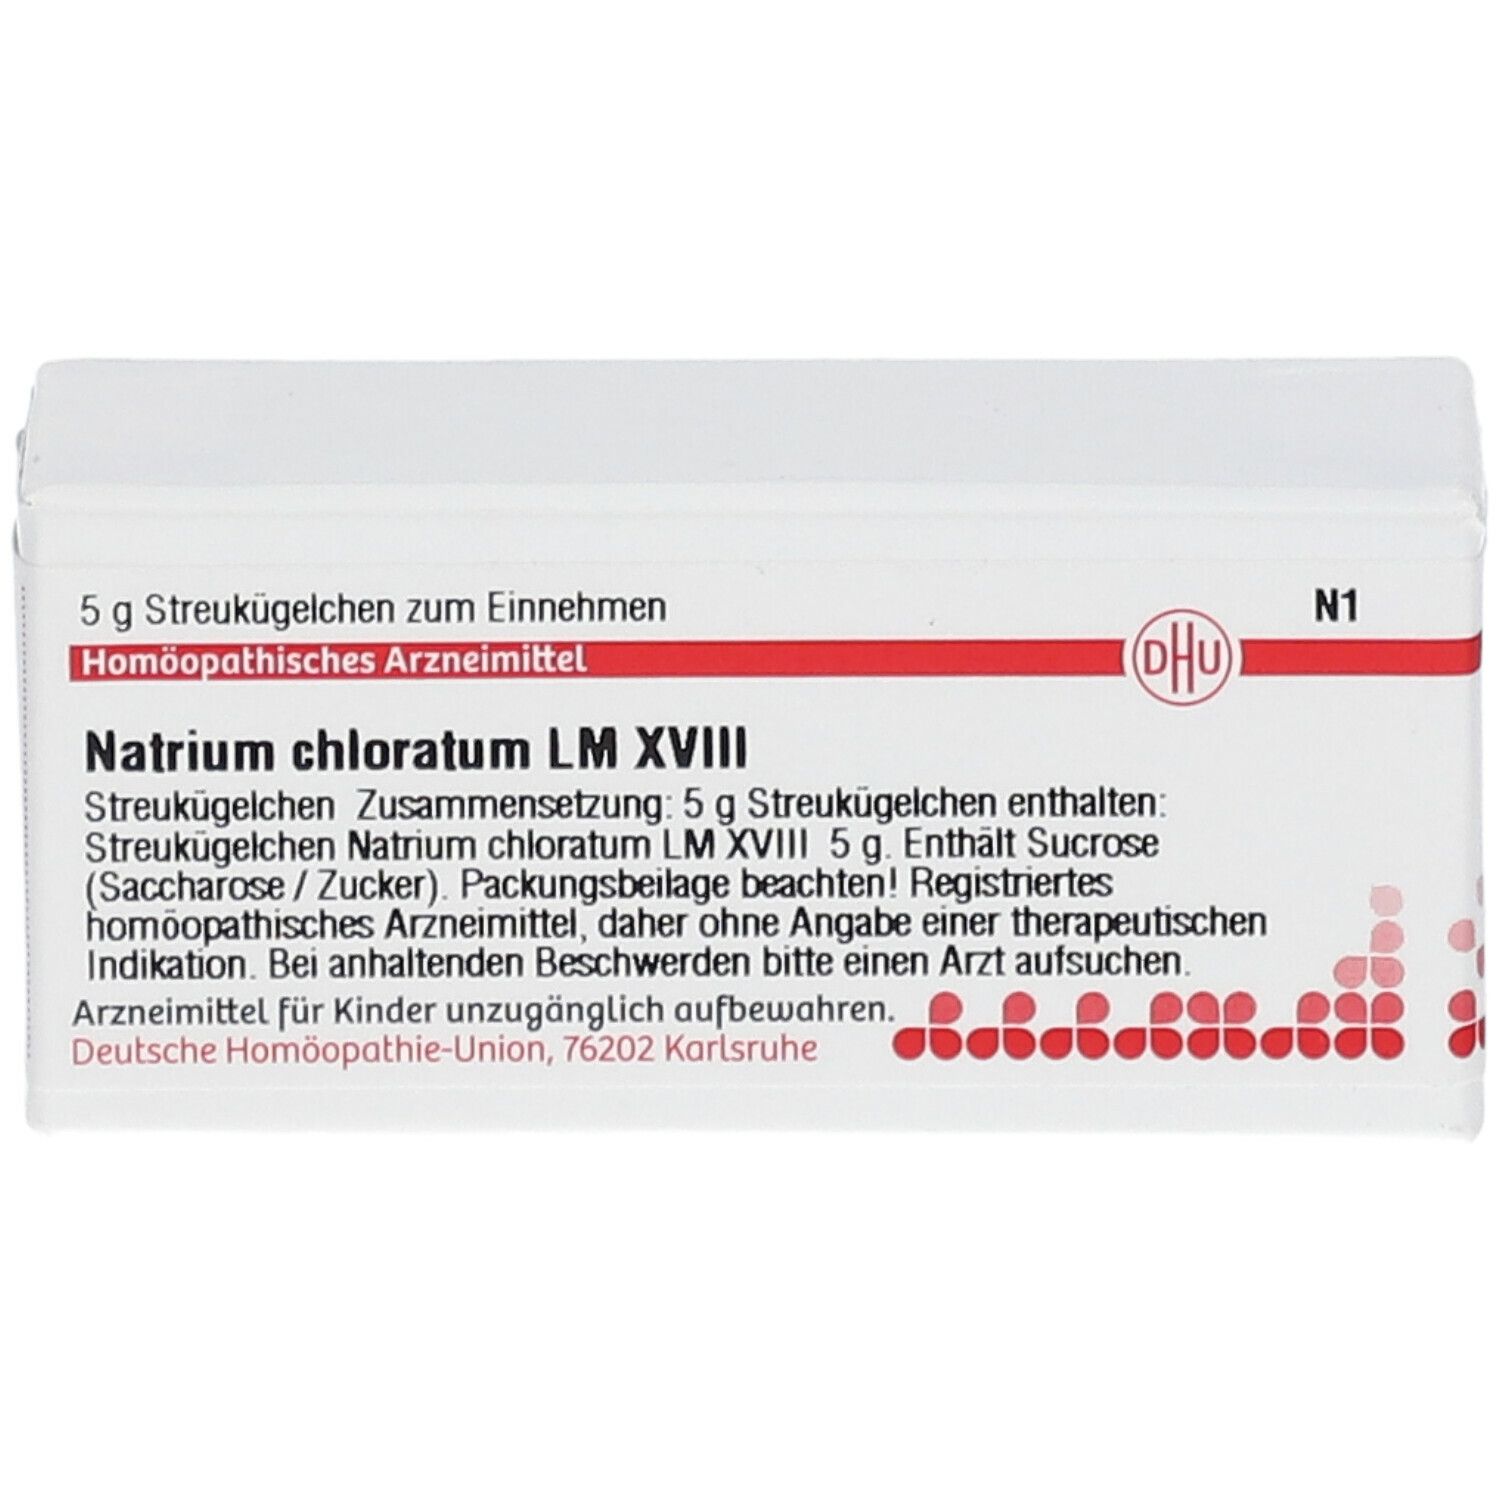 DHU Natrium Chloratum LM XVIII